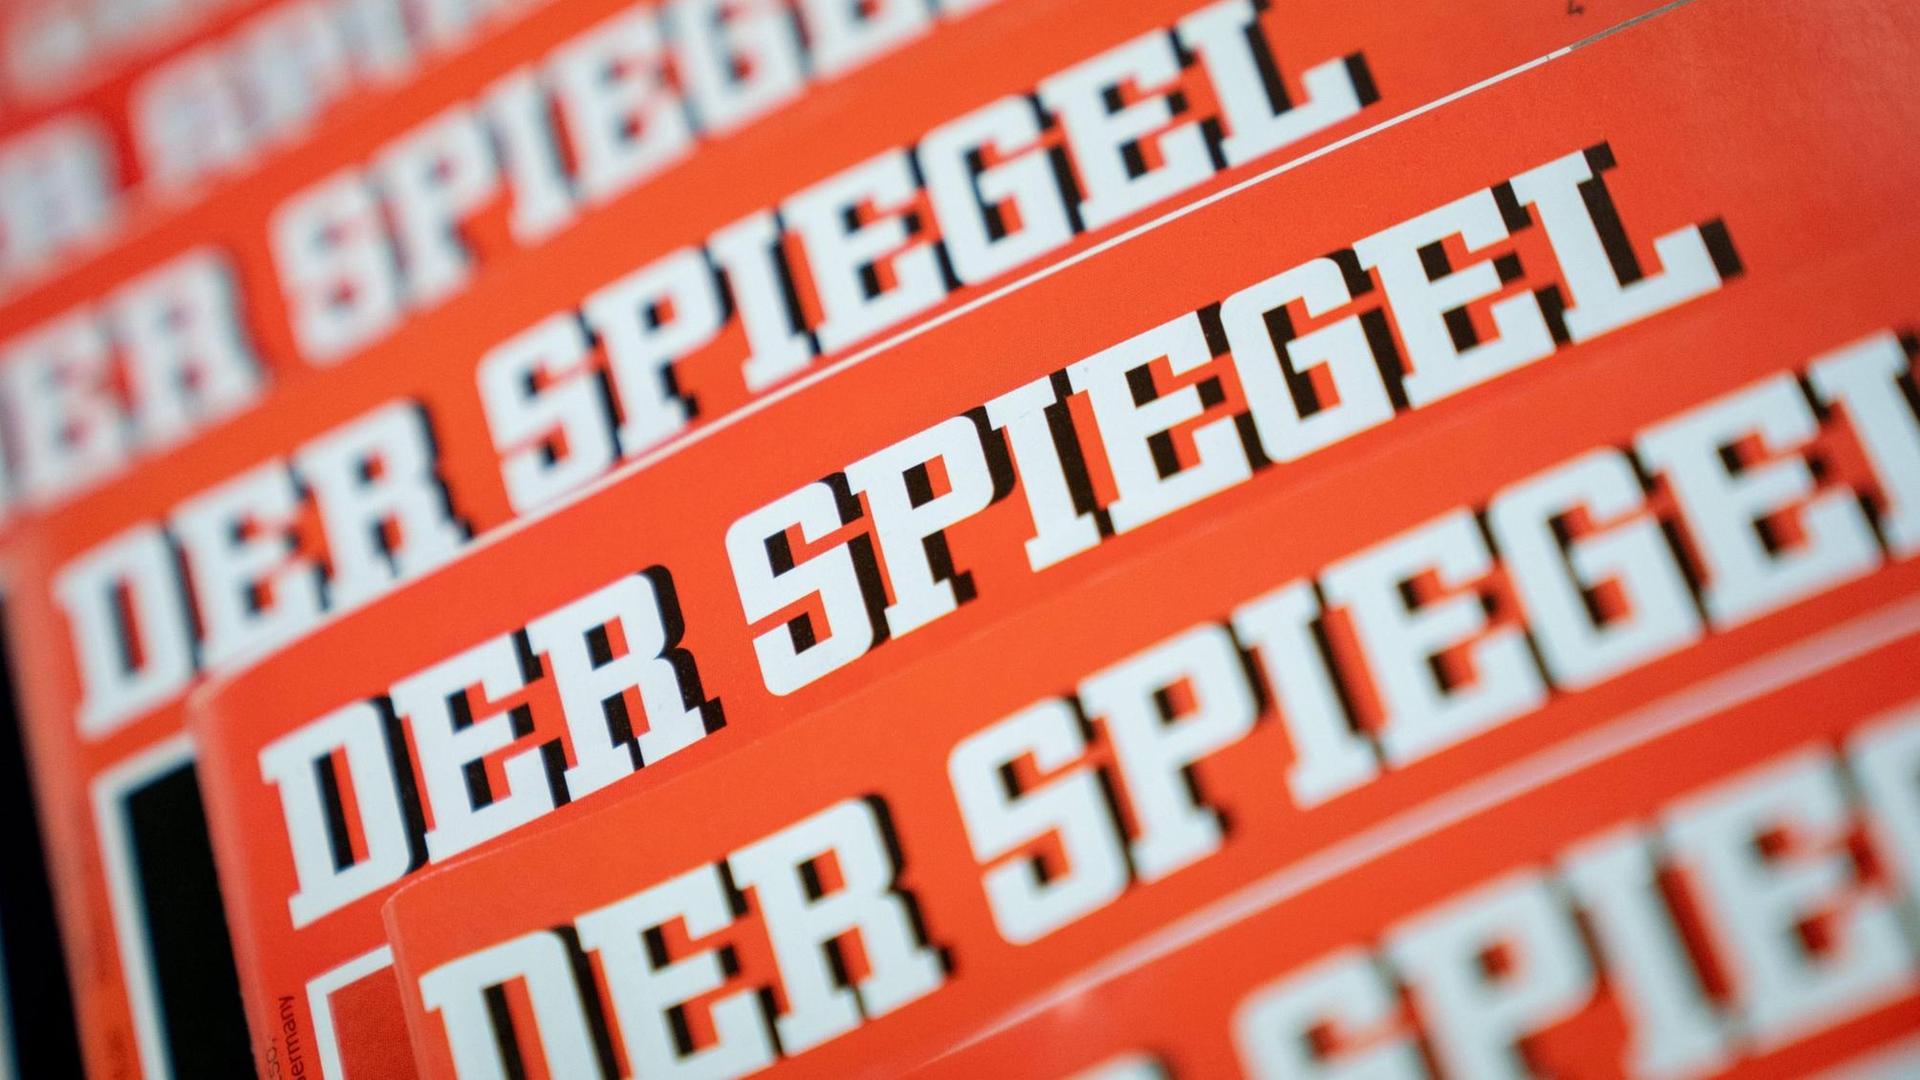 Verschiedene Ausgaben des Nachrichtenmagazins "Der Spiegel" liegen übereinander auf einem Tisch.